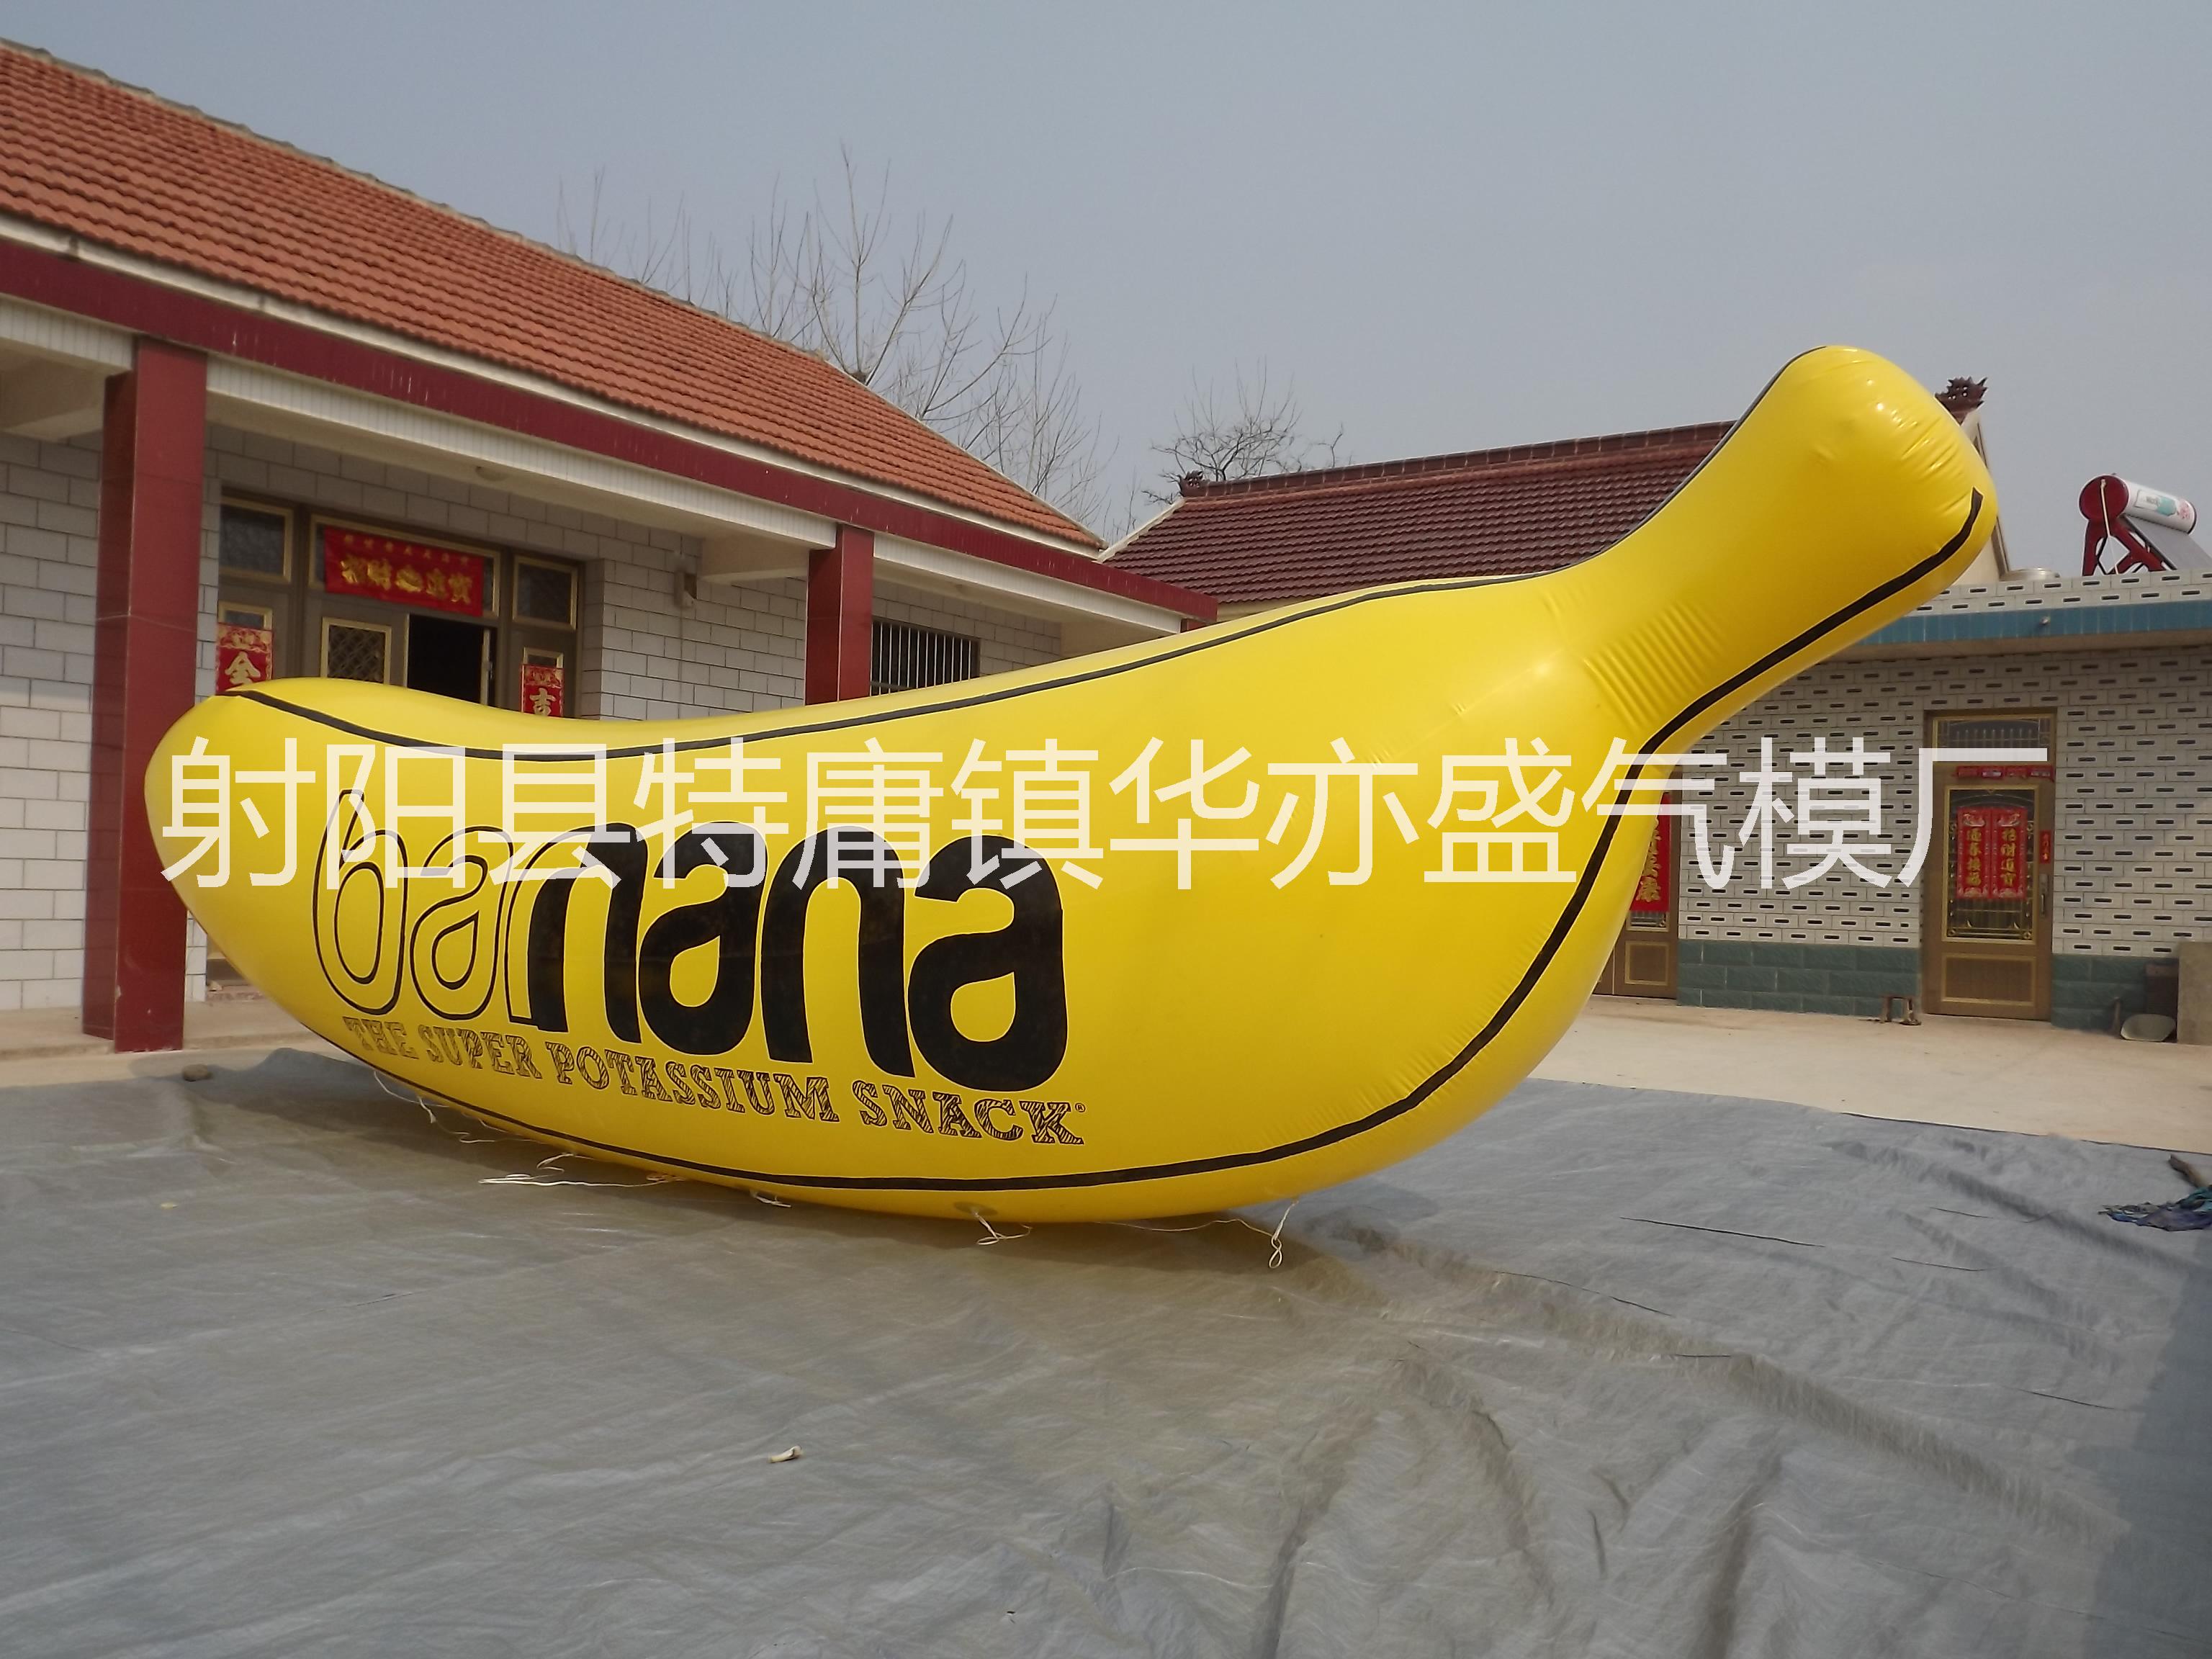 供应pvc异形气球,充气升空pvc香蕉气模，pvc升空水果气模制作图片